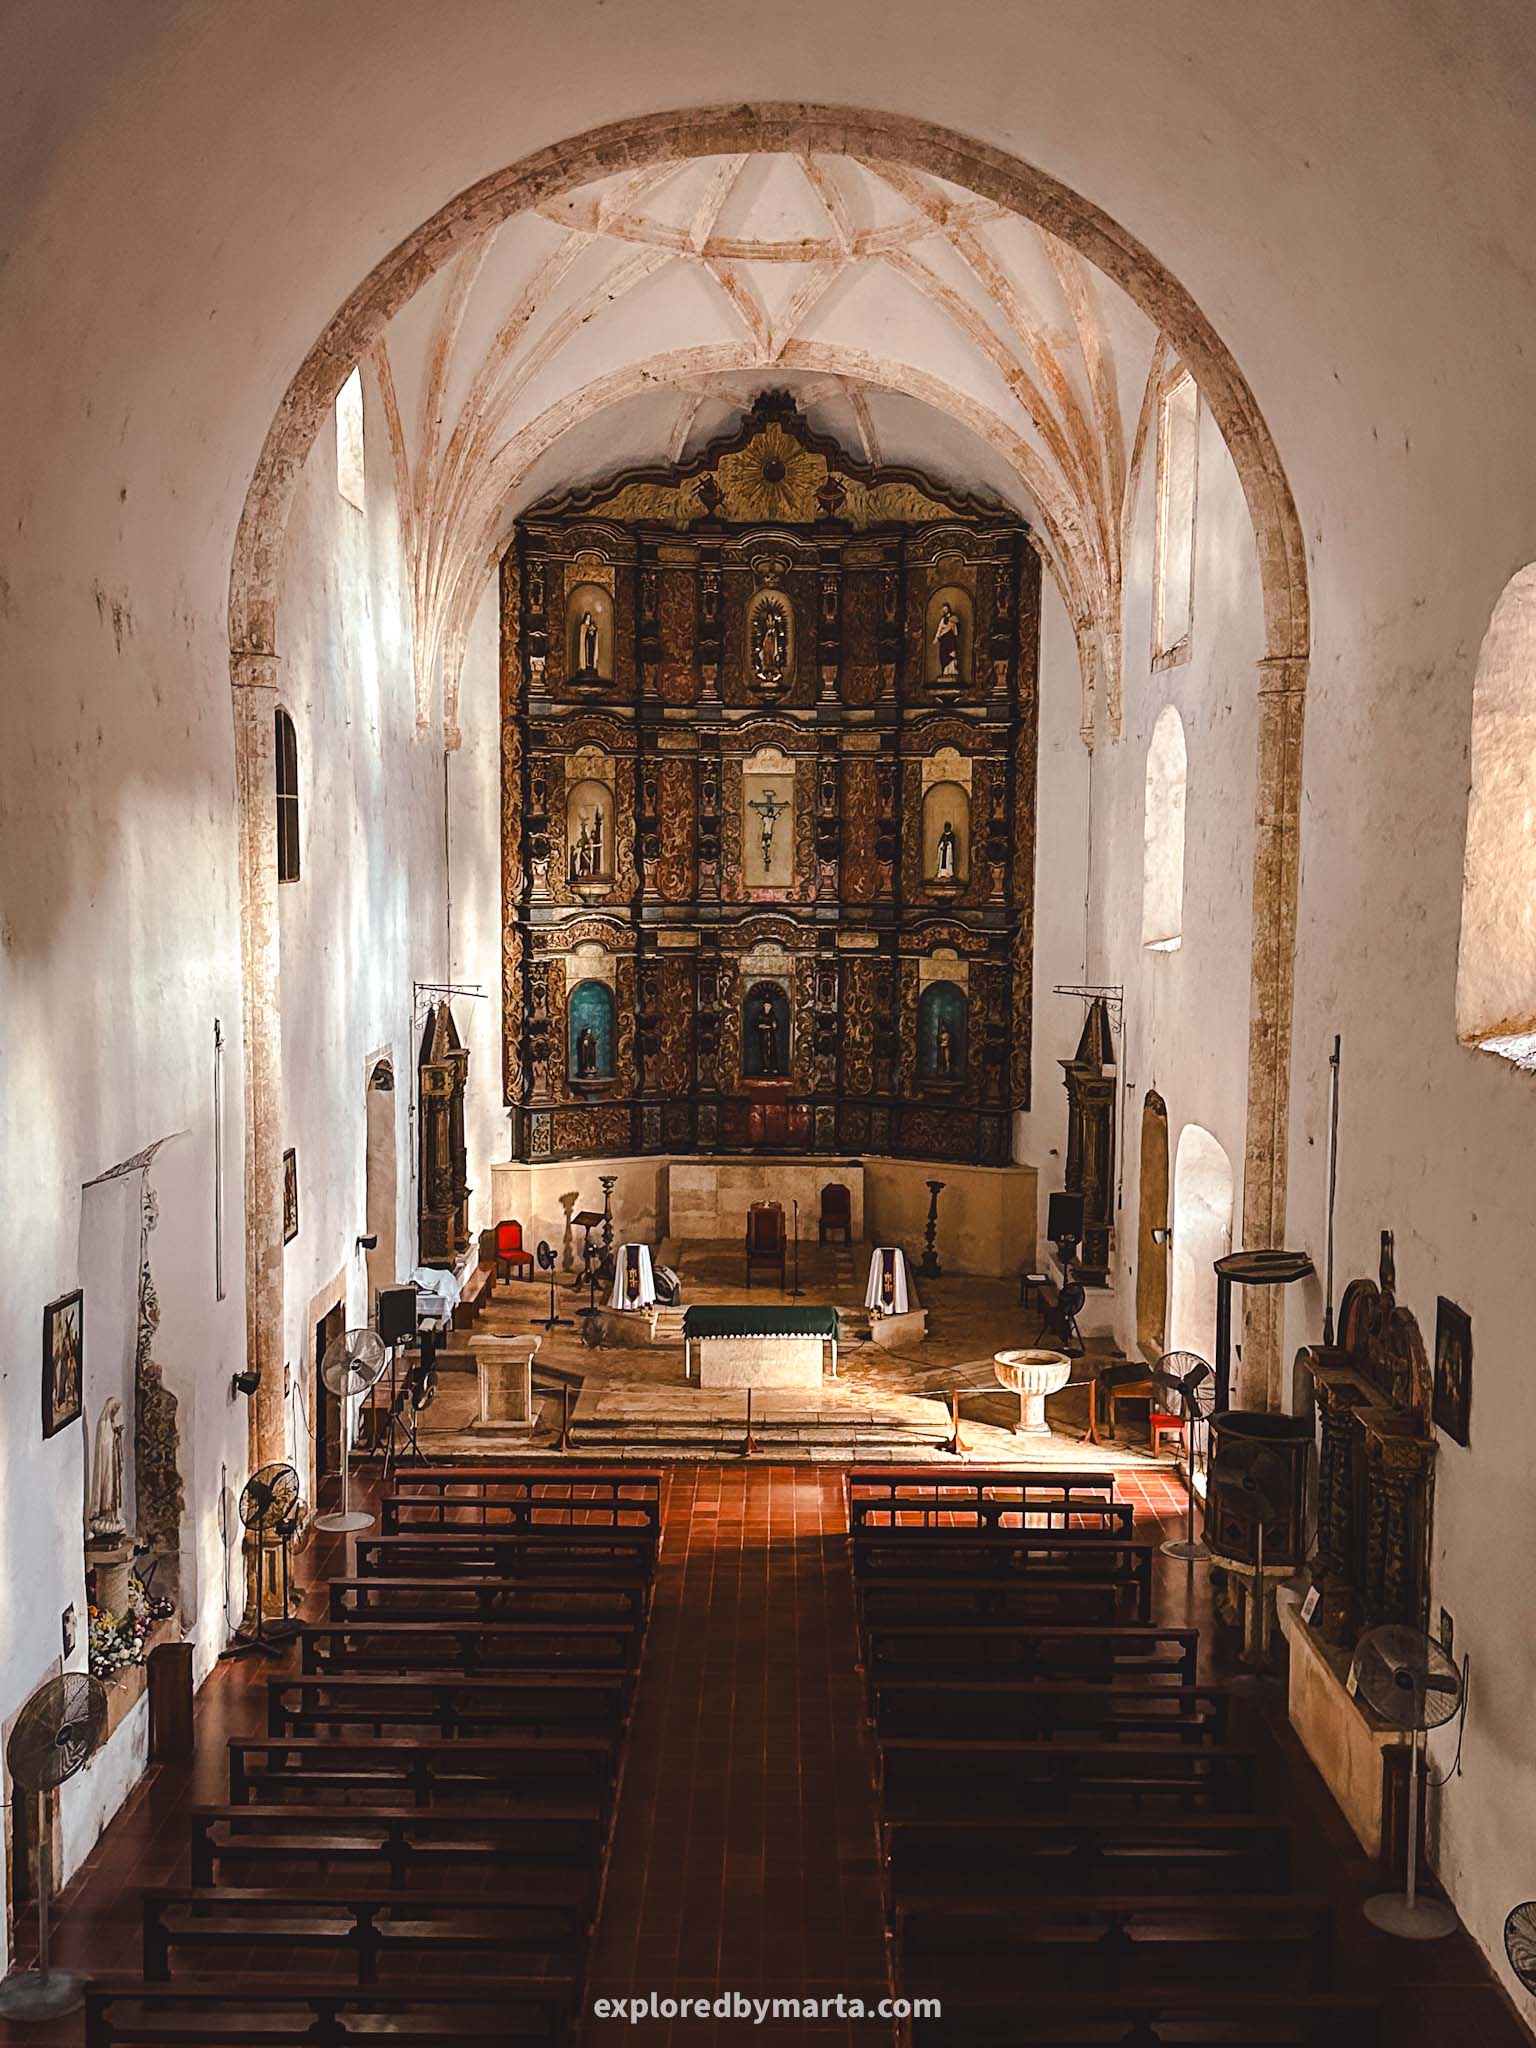 Valladolid, Mexico-Convento de San Bernardino de Siena in Valladolid, Mexico